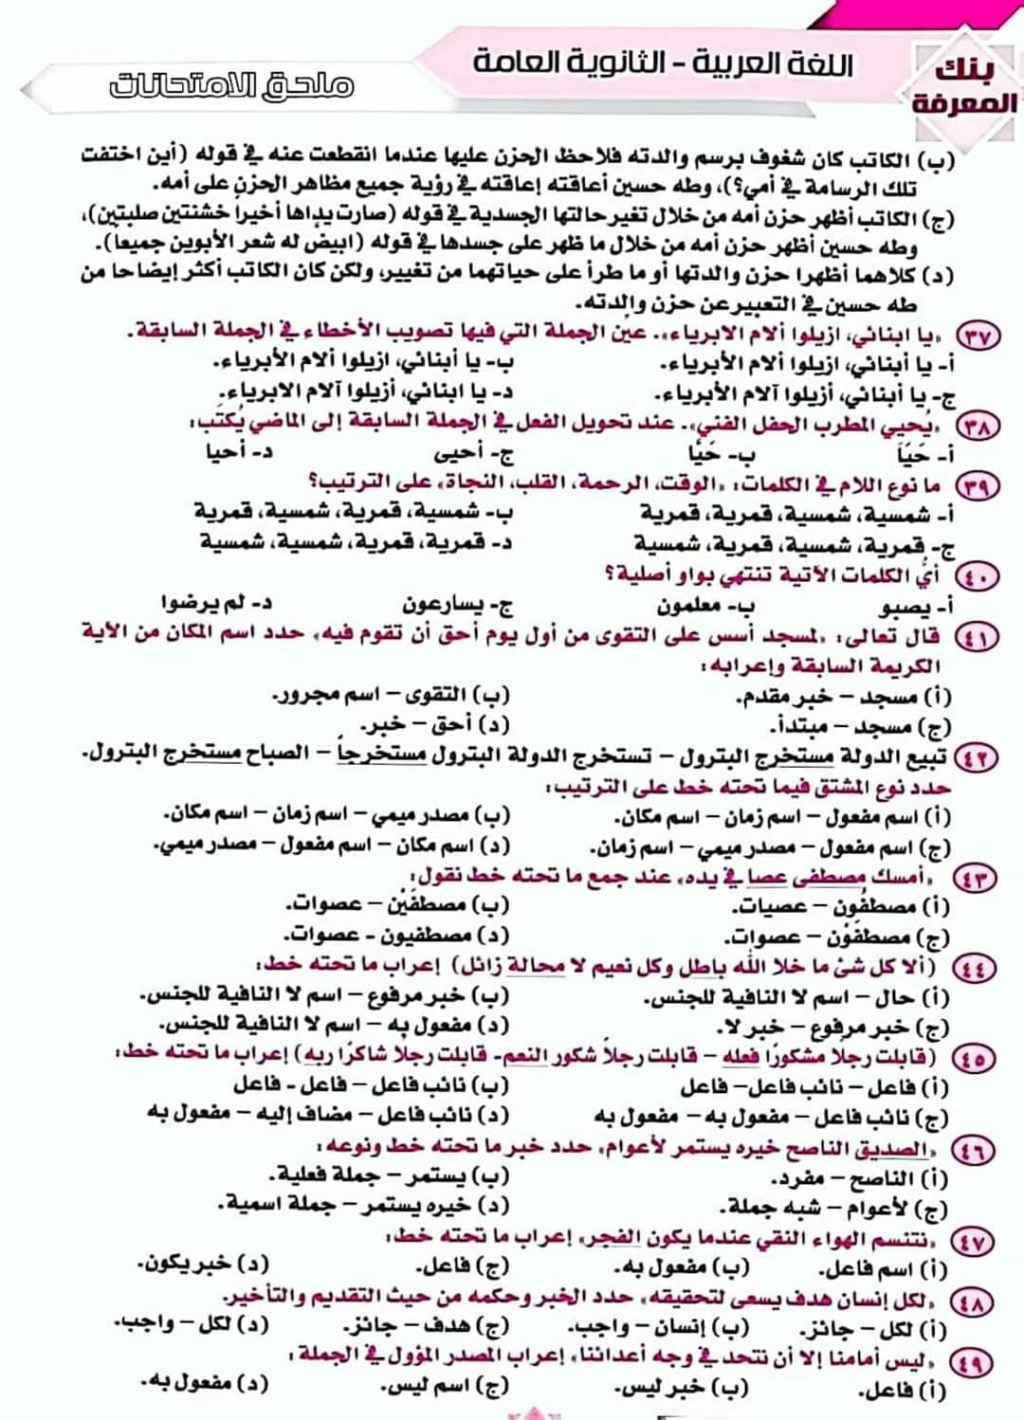 امتحان لغة عربية نموذجي للصف الثالث الثانوي مطابق لآخر المواصفات أ. ابراهيم الجابري 11245